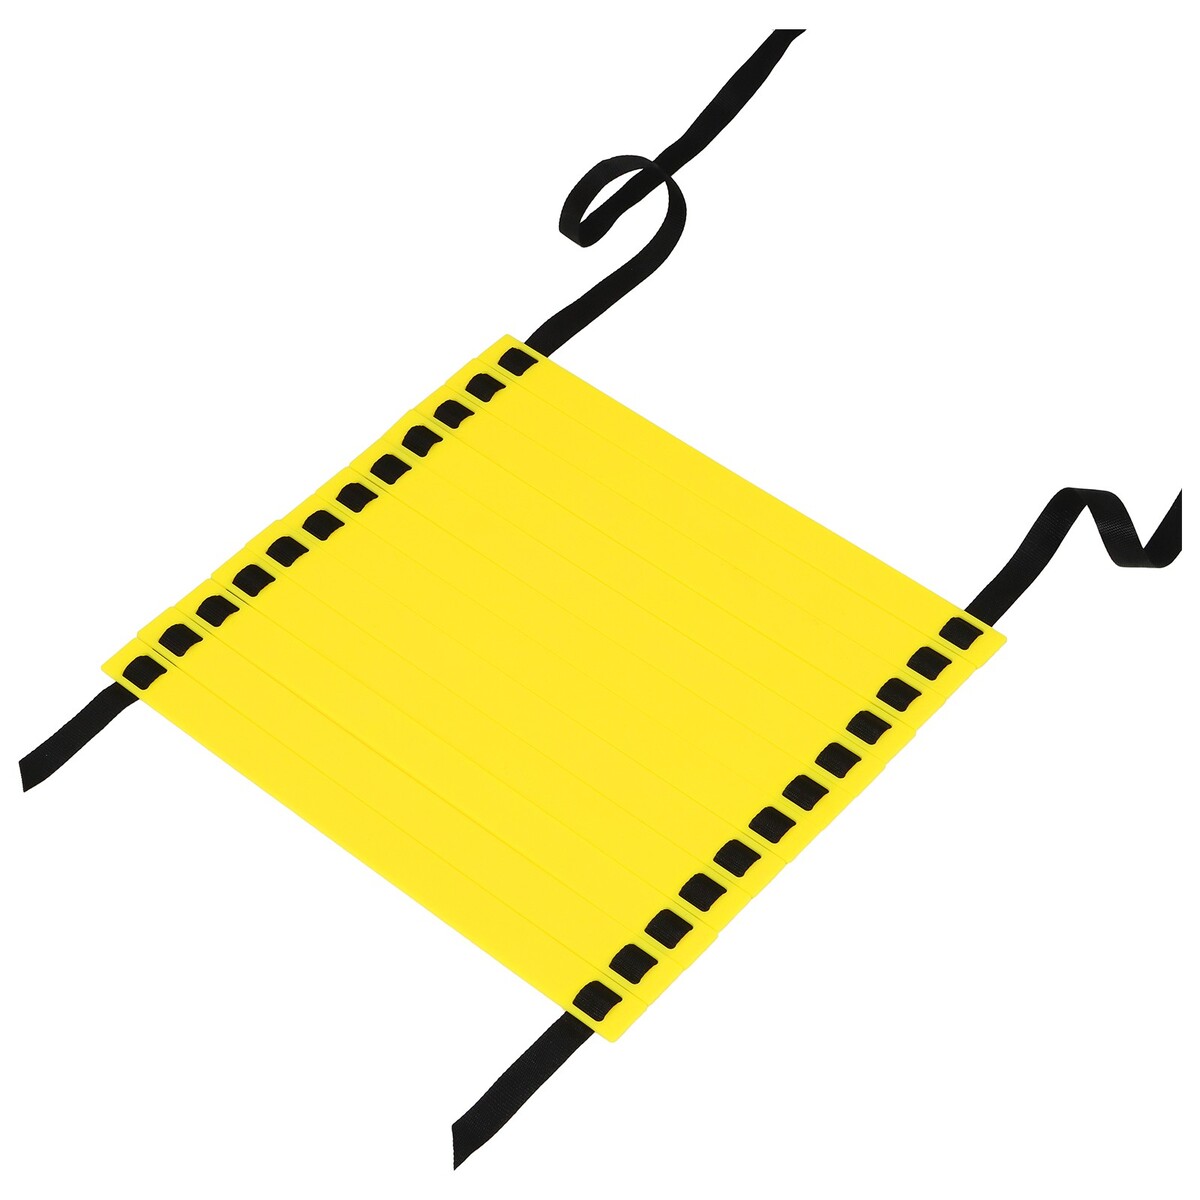 Координационная лестница onlytop, 6 м, толщина 2 мм, цвет желтый координационная лестница 6м 13 секций start up nt18010